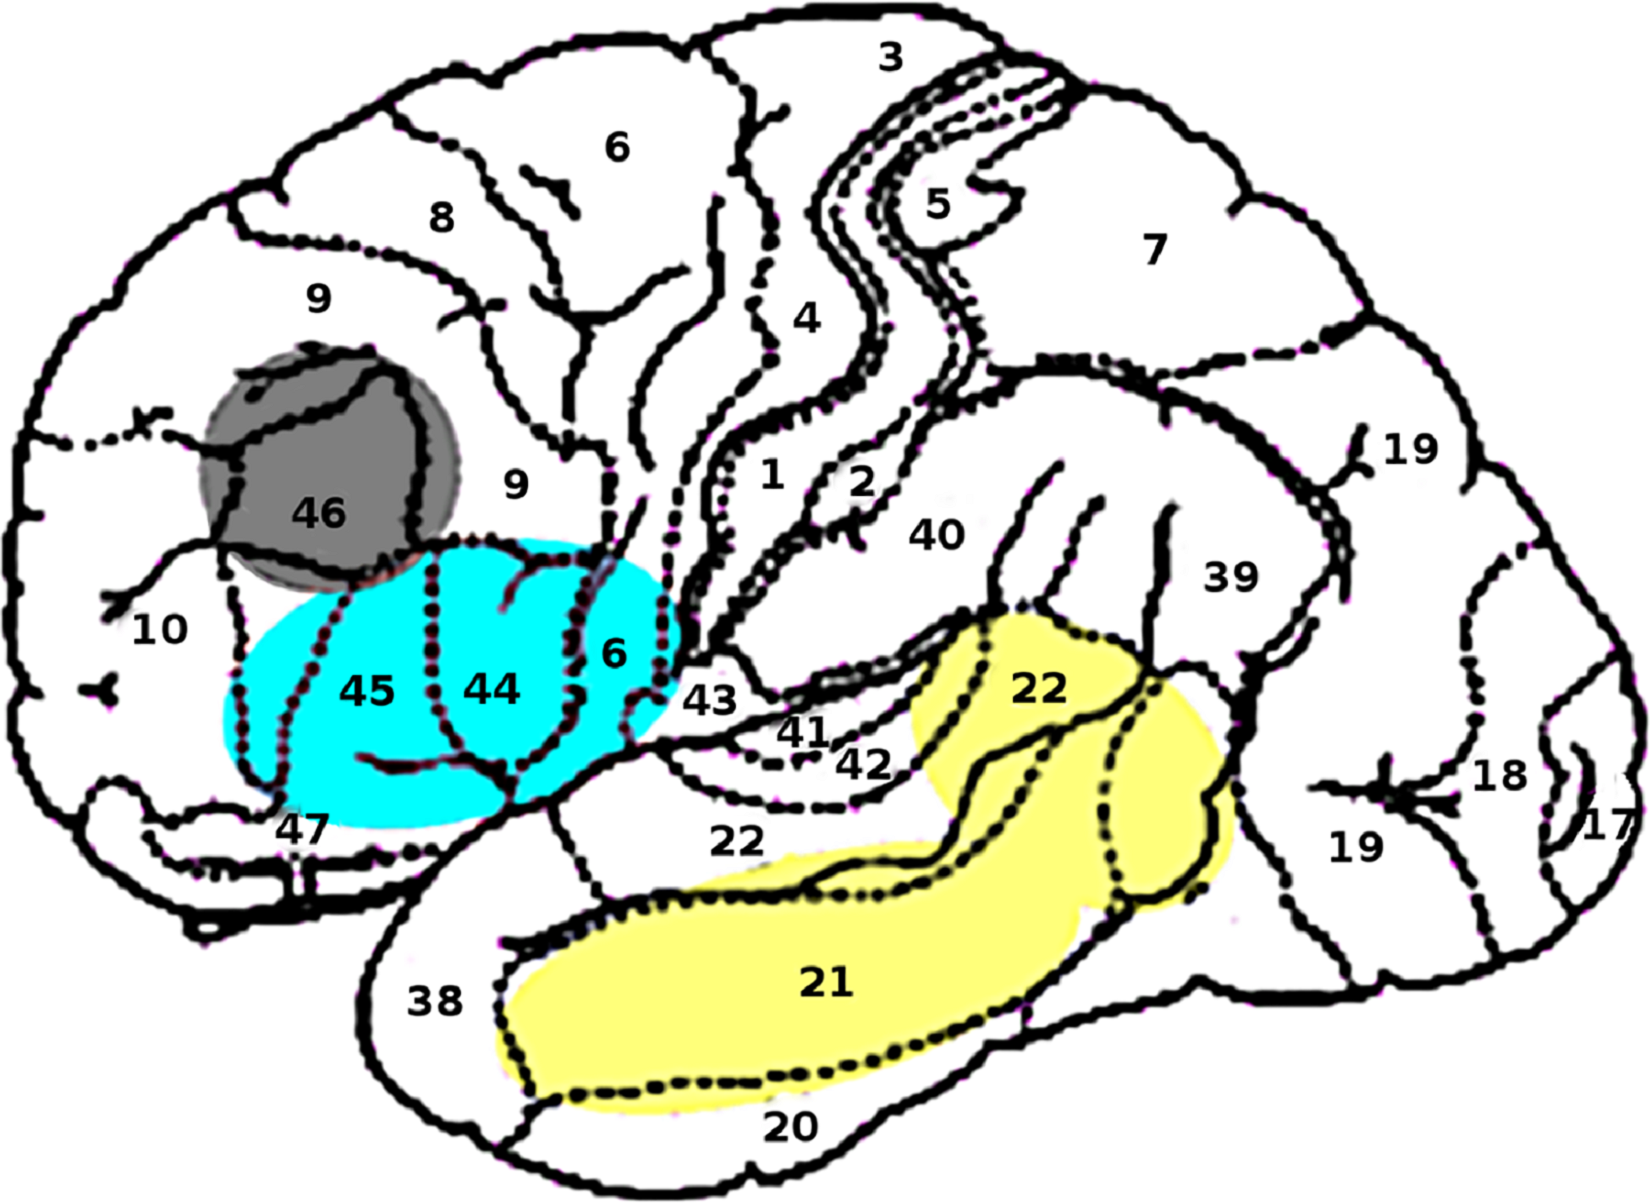 Localización de los componentes de memoria (amarillo), unificación (azul) y control (gris), según el científico Peter Hagoort, del Instituto Max Planck de Psicolingüística. Fuente: PLOS ONE.